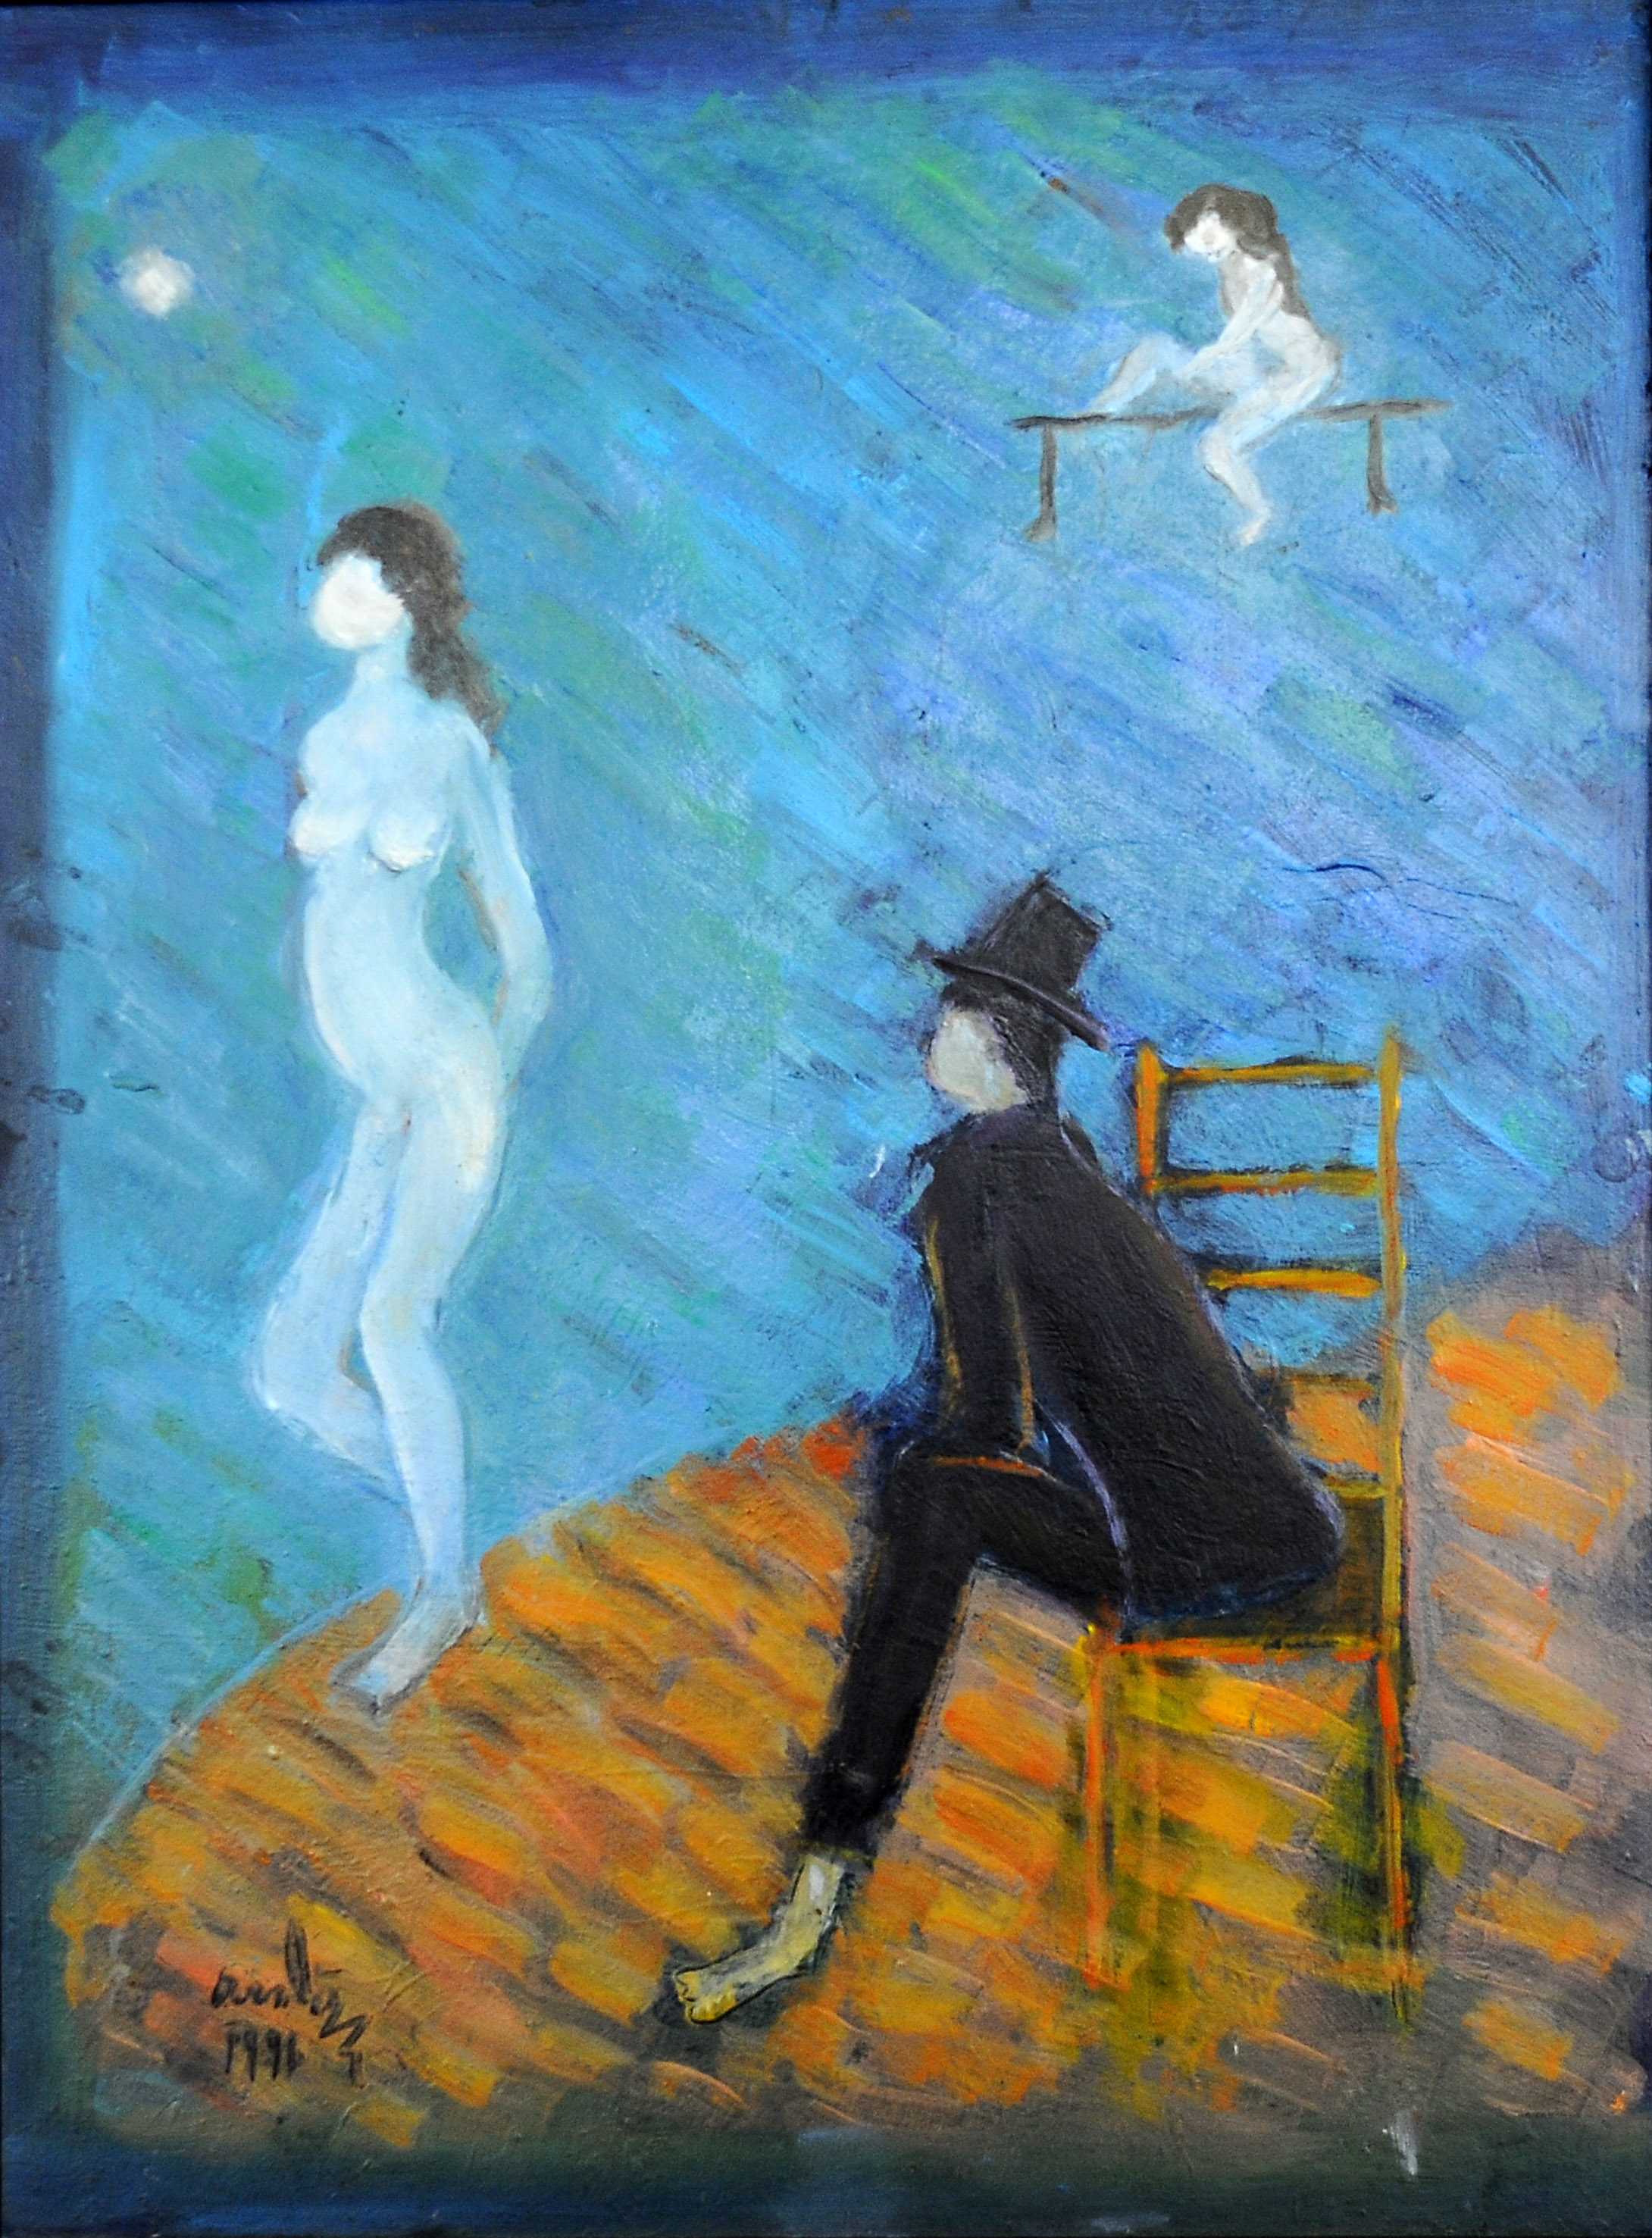  İsimsiz- Untitled, 1991, Duralit üzerine yağlıboya- Oil on duralite,  64X47  cm